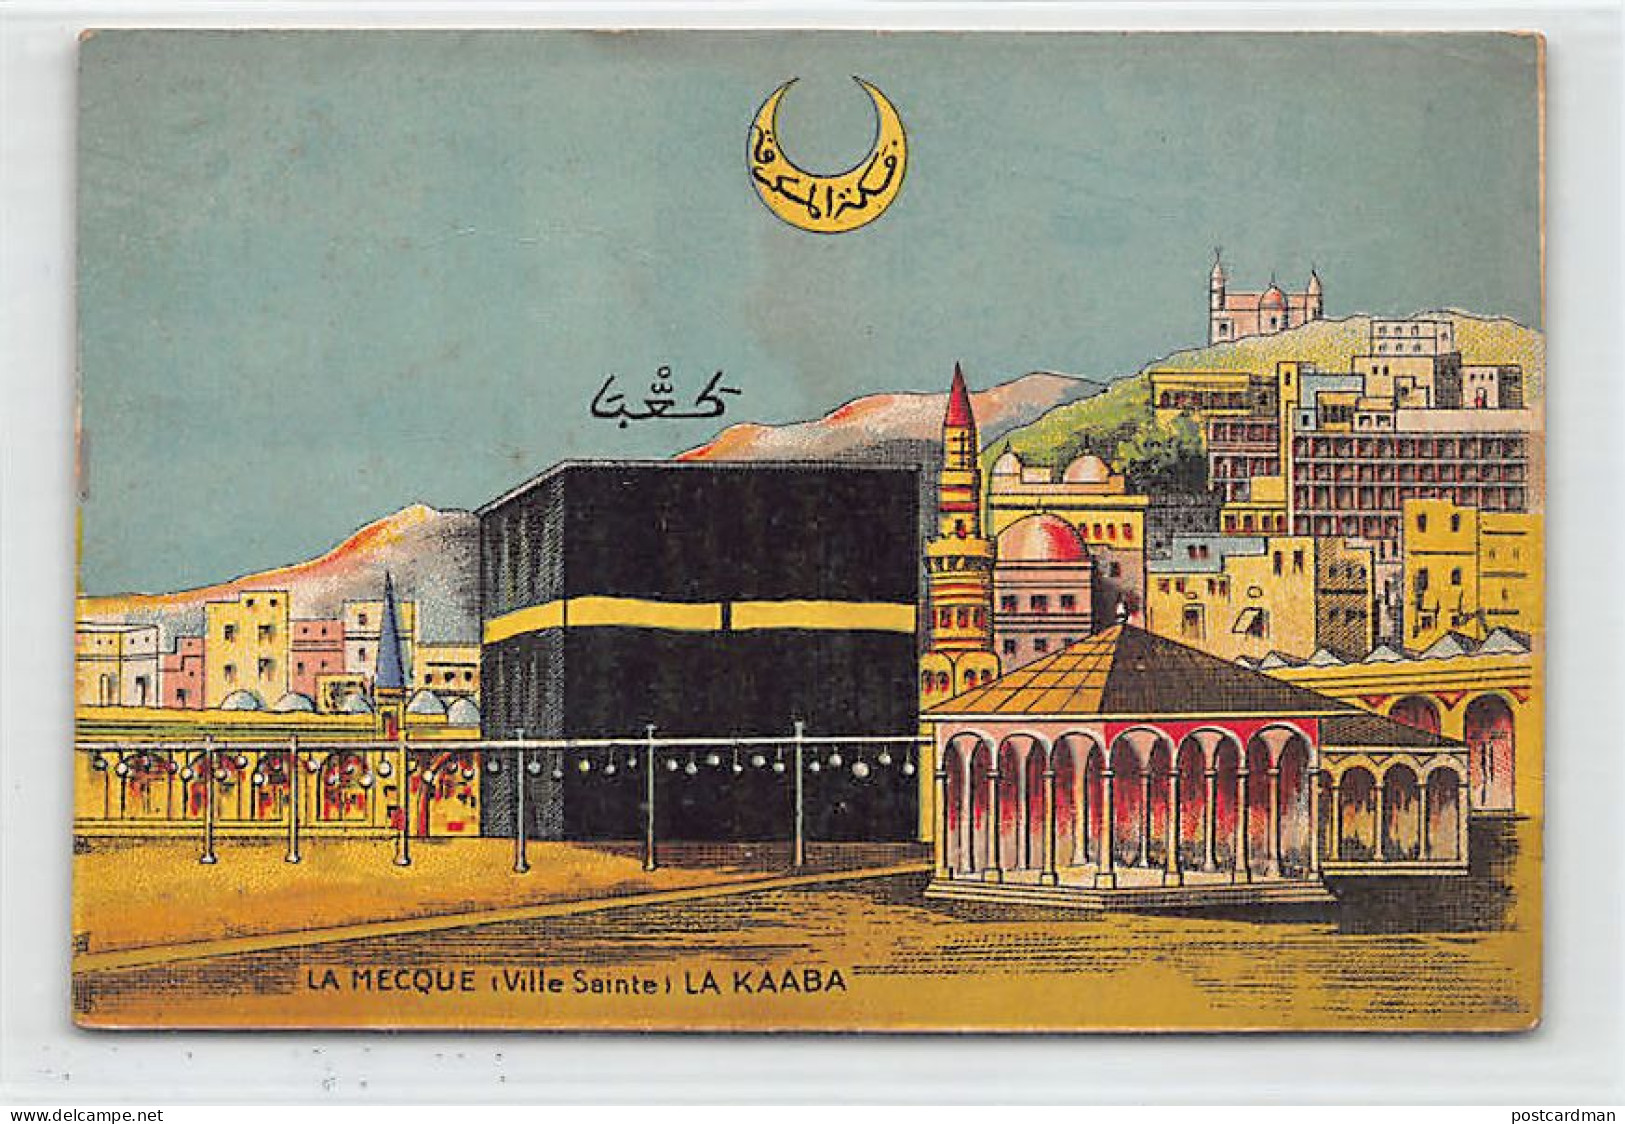 Saudi Arabia - MECCA - The Kaaba - Publ. E. Bonestève (Algiers, Algeria) - Saoedi-Arabië